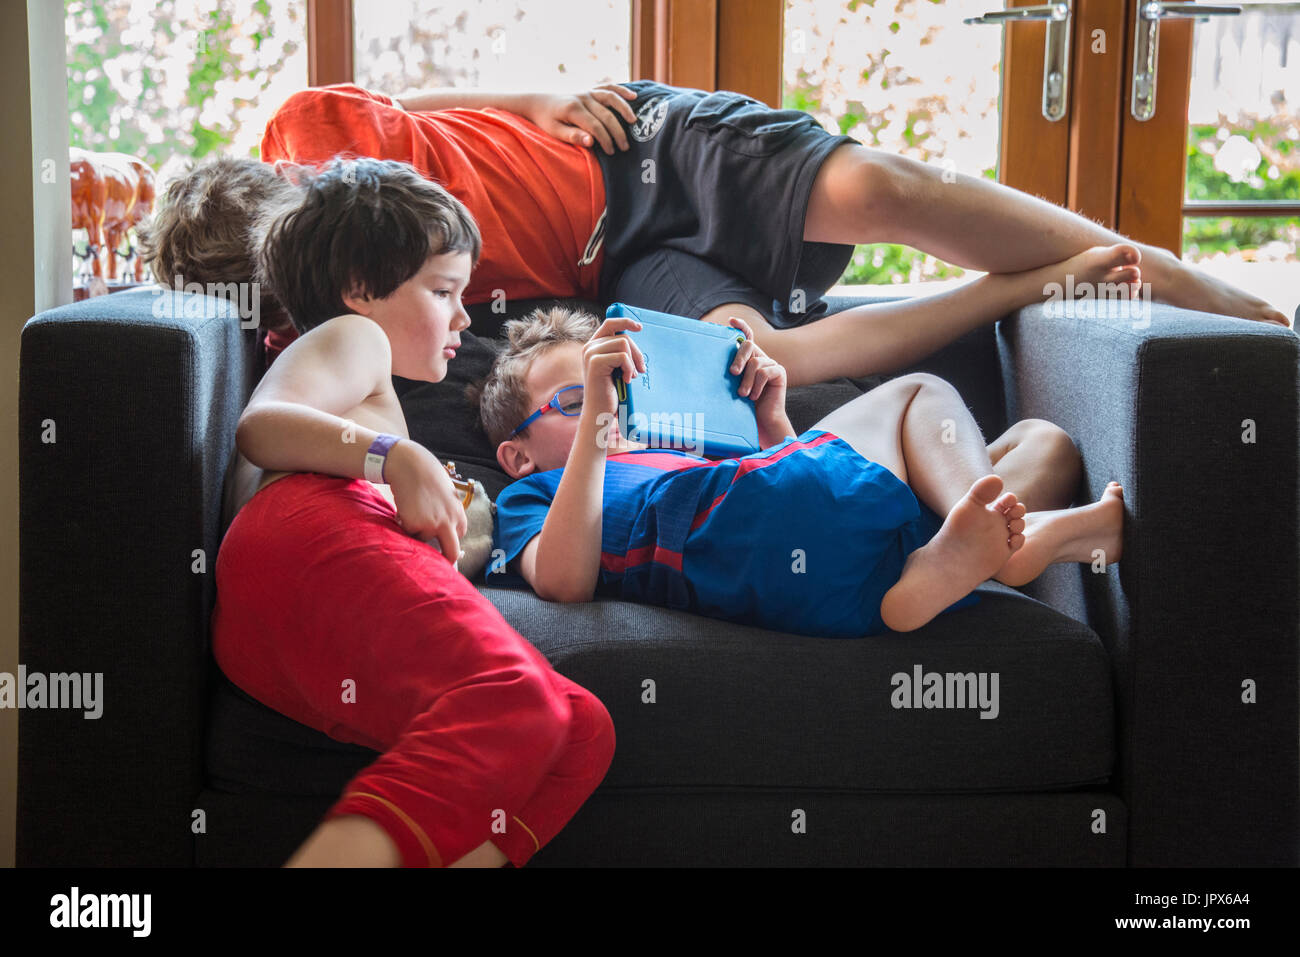 Young Boy Spielen Spiele auf dem iPad mit 2 anderen Jungen Auf der Suche nach Stockfoto